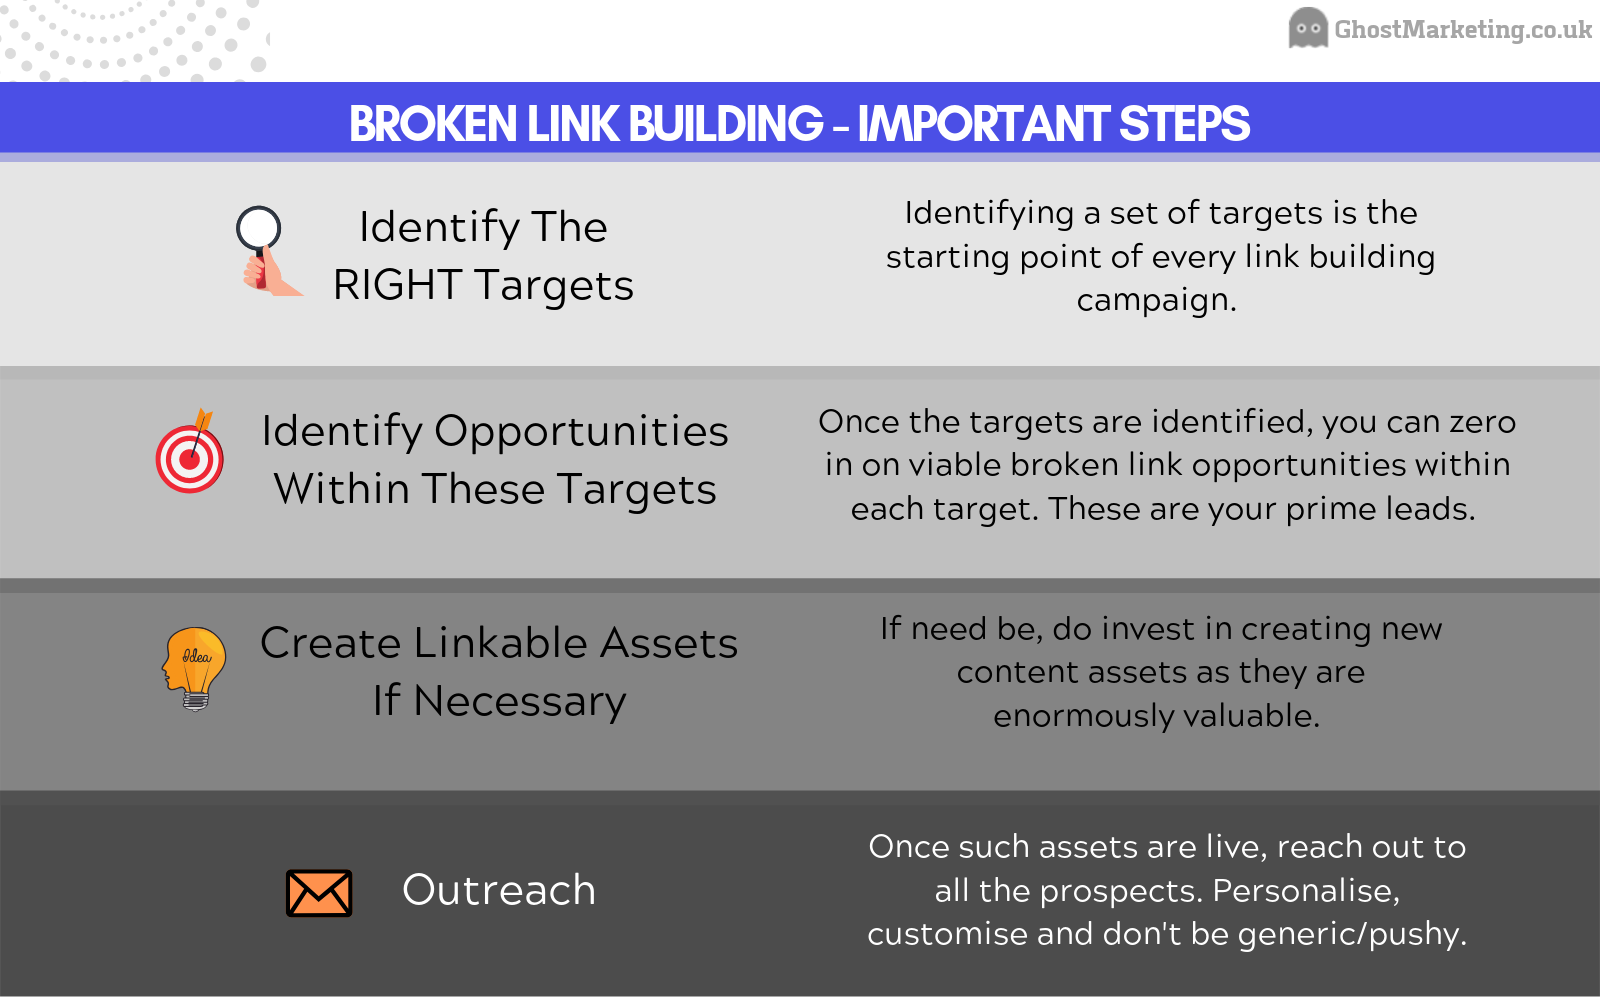 Broken Link Building Guide - How To build Broken Links - Ghost Marketing - Broken Link Building Steps